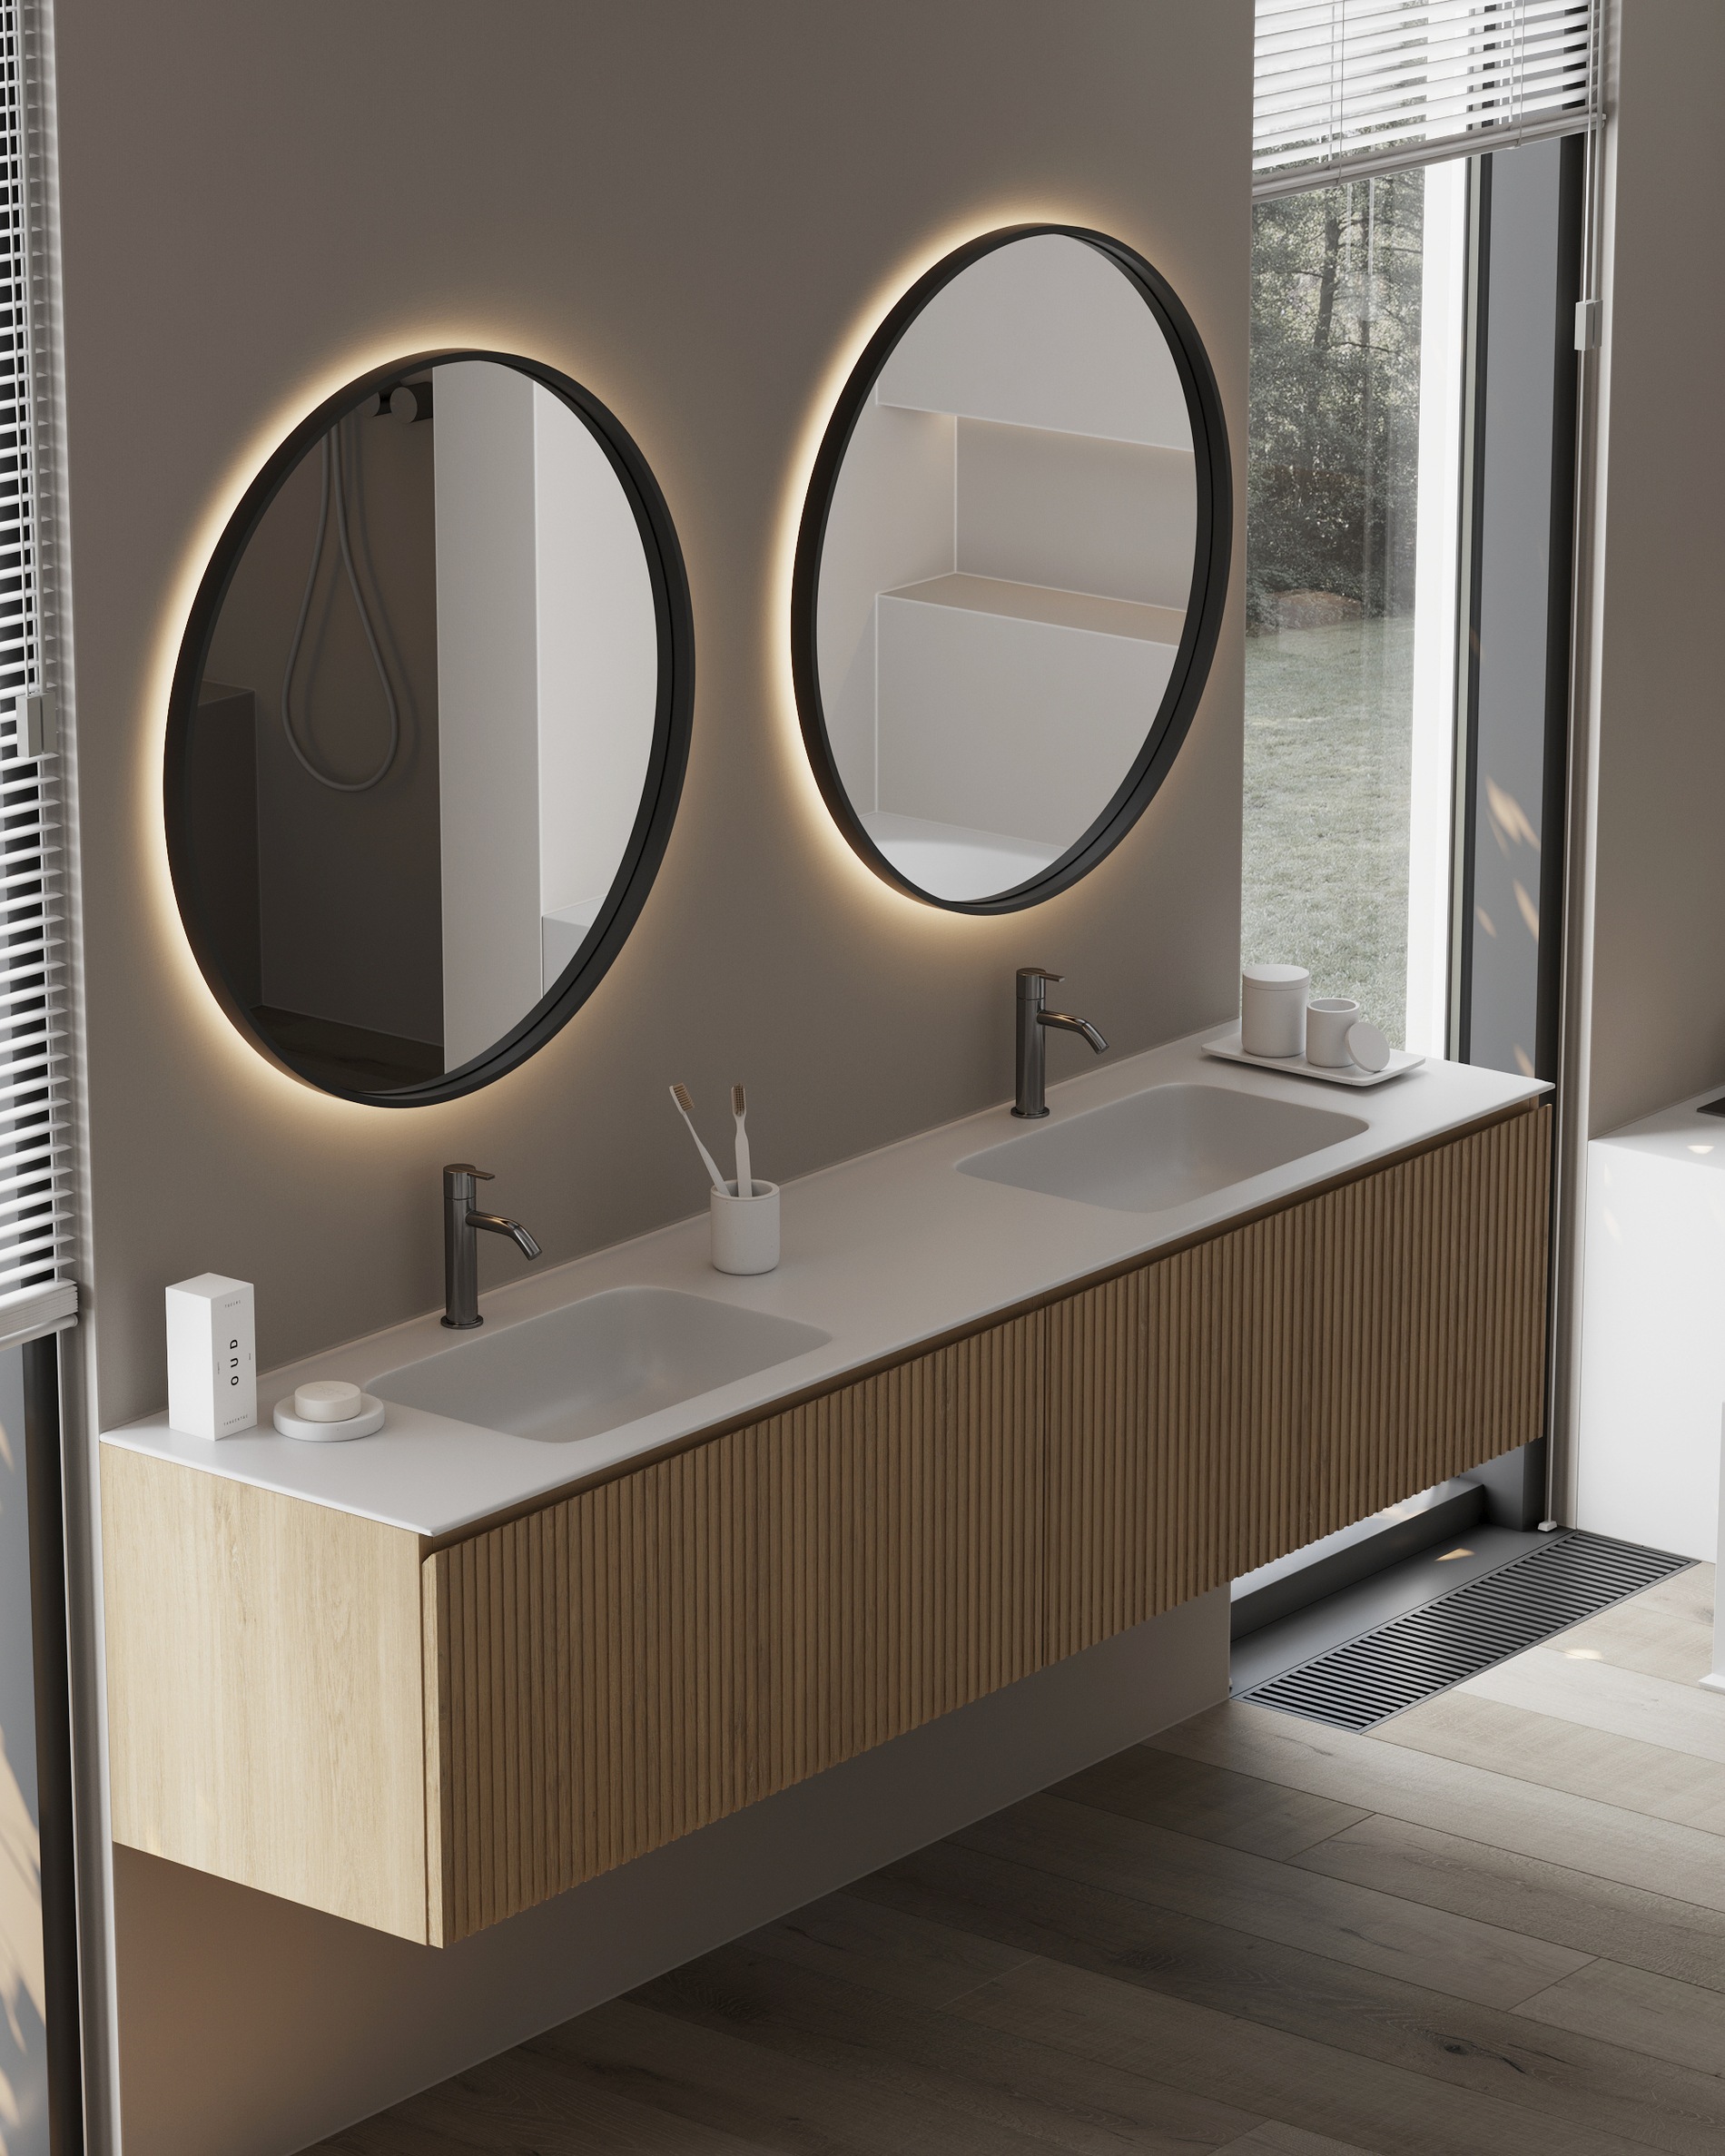 Siena: La colección de muebles de roble macizo que personaliza tu baño.